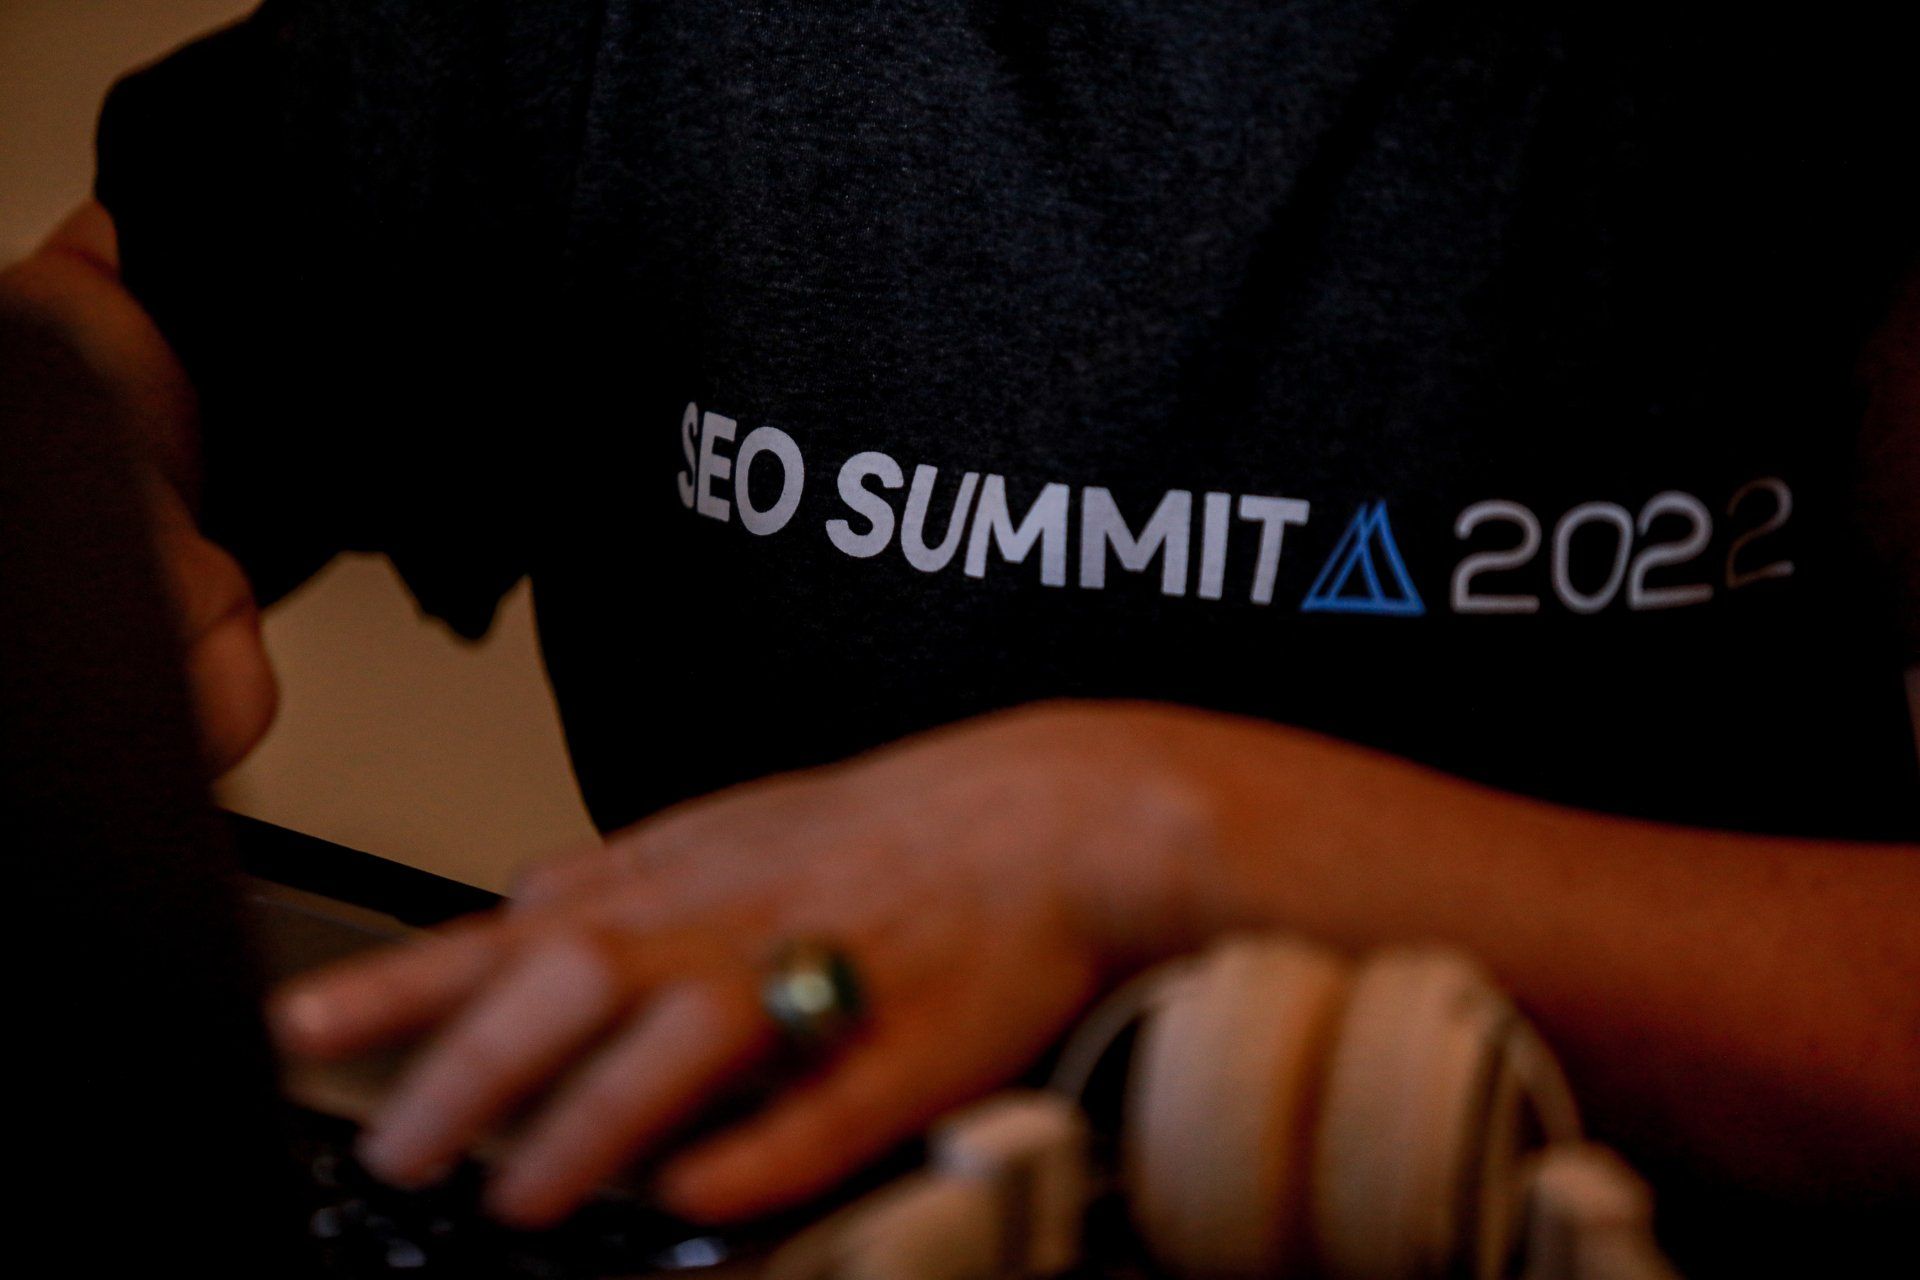 SEO Summit 2022, um evento da Conversion, a maior agência de SEO do Brasil